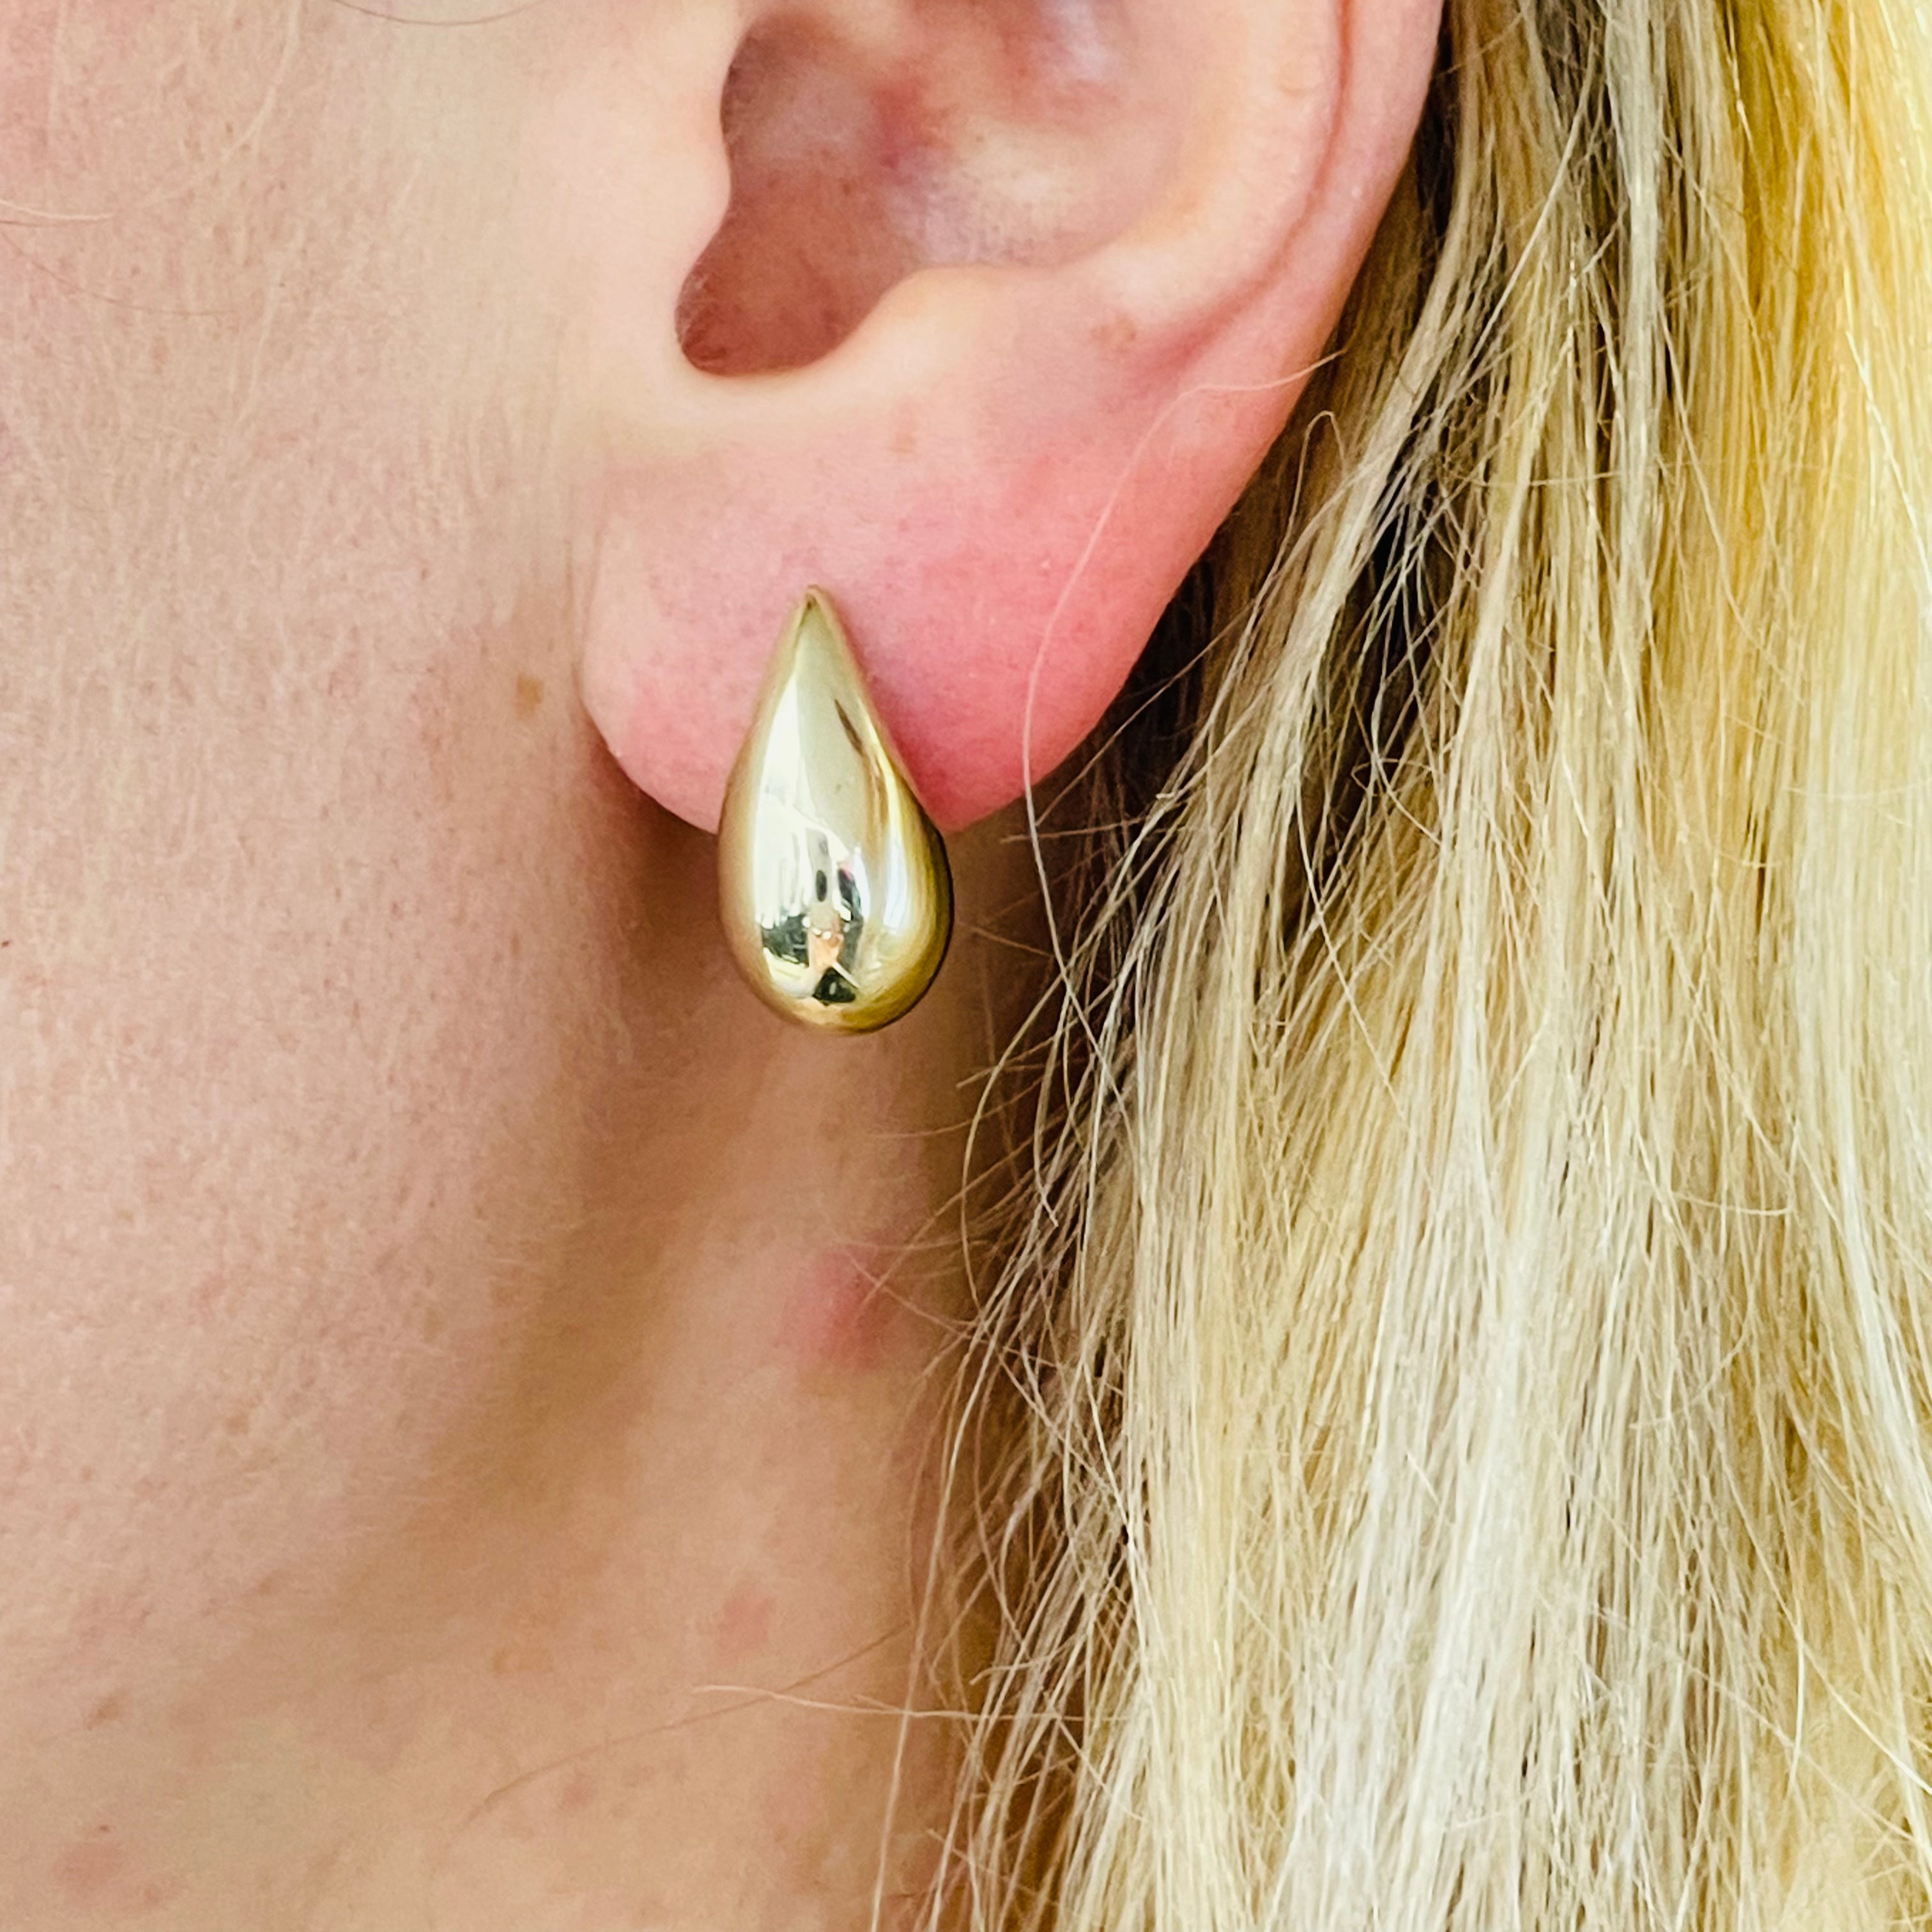 Puffed Tear Drop Shaped Stud Earrings in 10K Yellow Gold 19mm